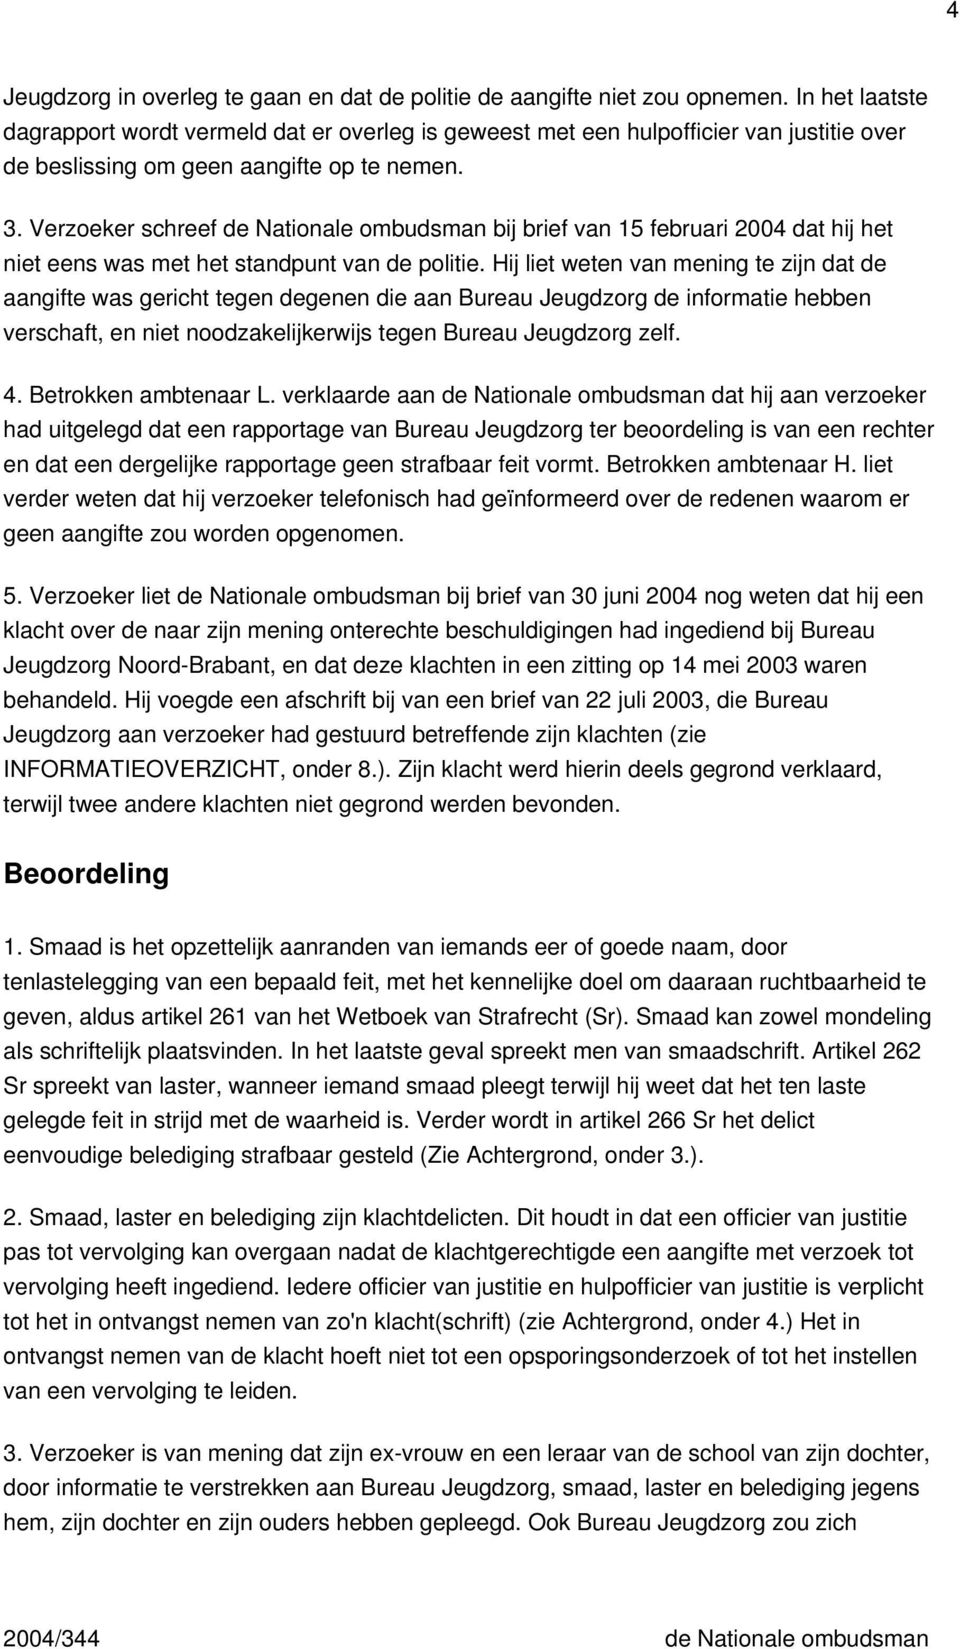 Verzoeker schreef de Nationale ombudsman bij brief van 15 februari 2004 dat hij het niet eens was met het standpunt van de politie.